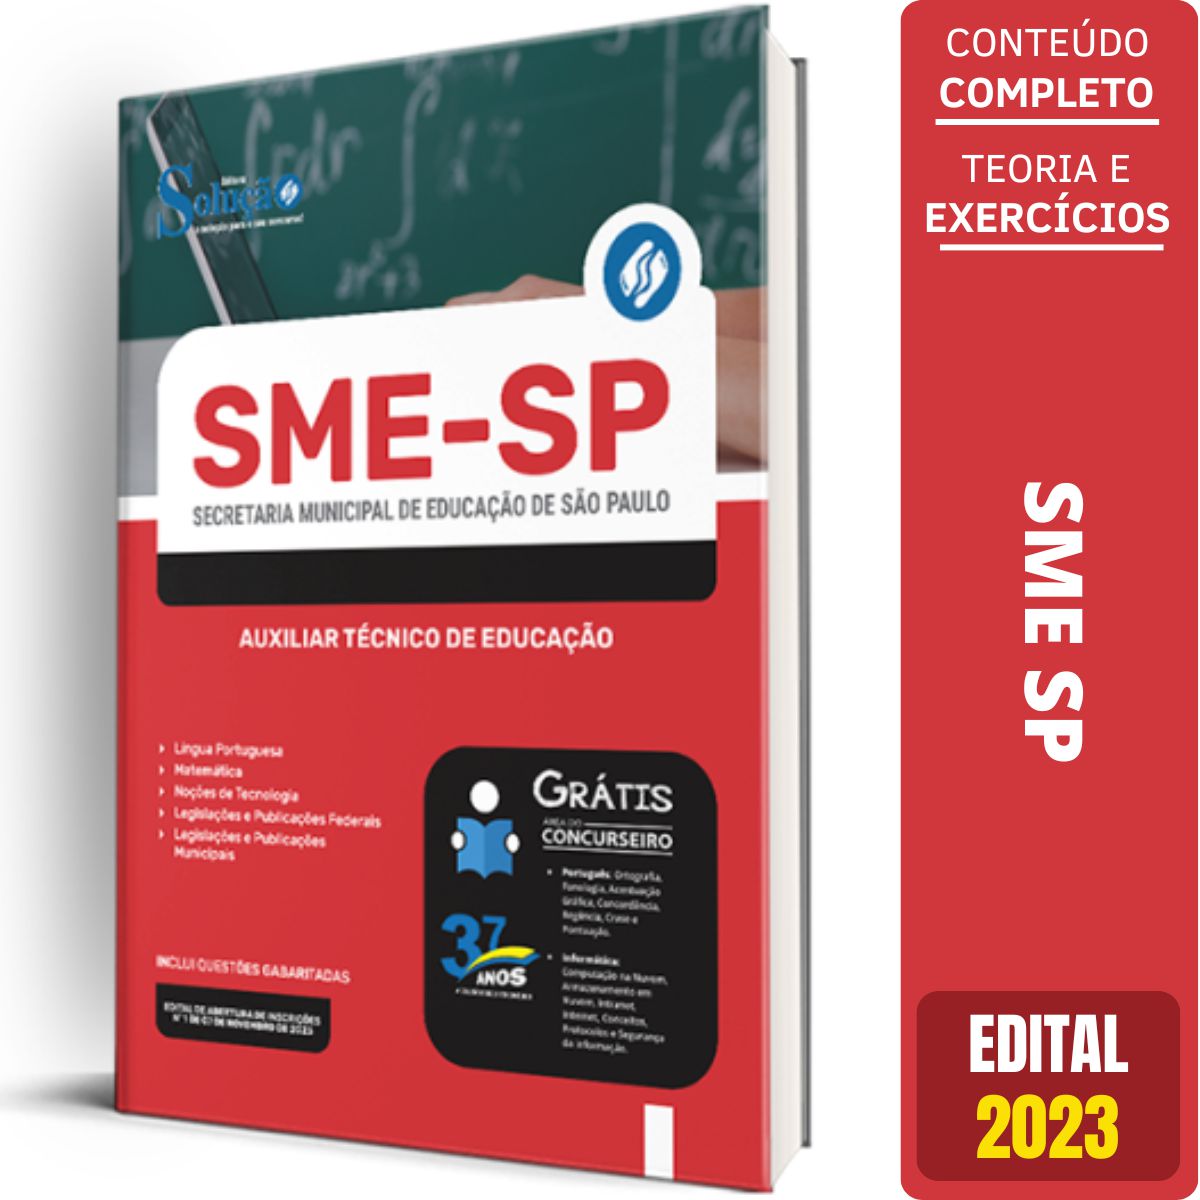 SME - SP: Saiu Classificação Final para Contratação de Auxiliar